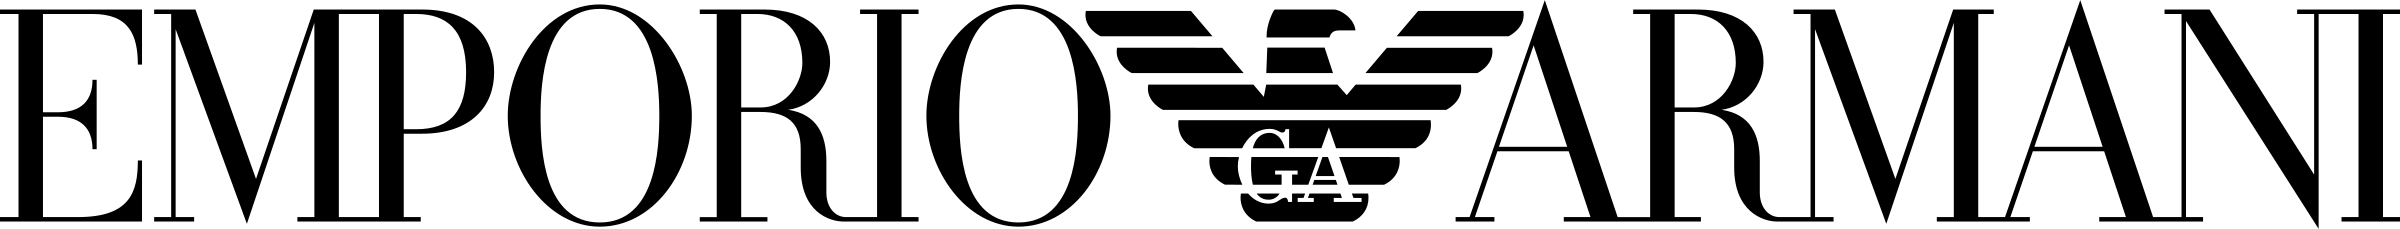 Armani Logo Download PNG Image